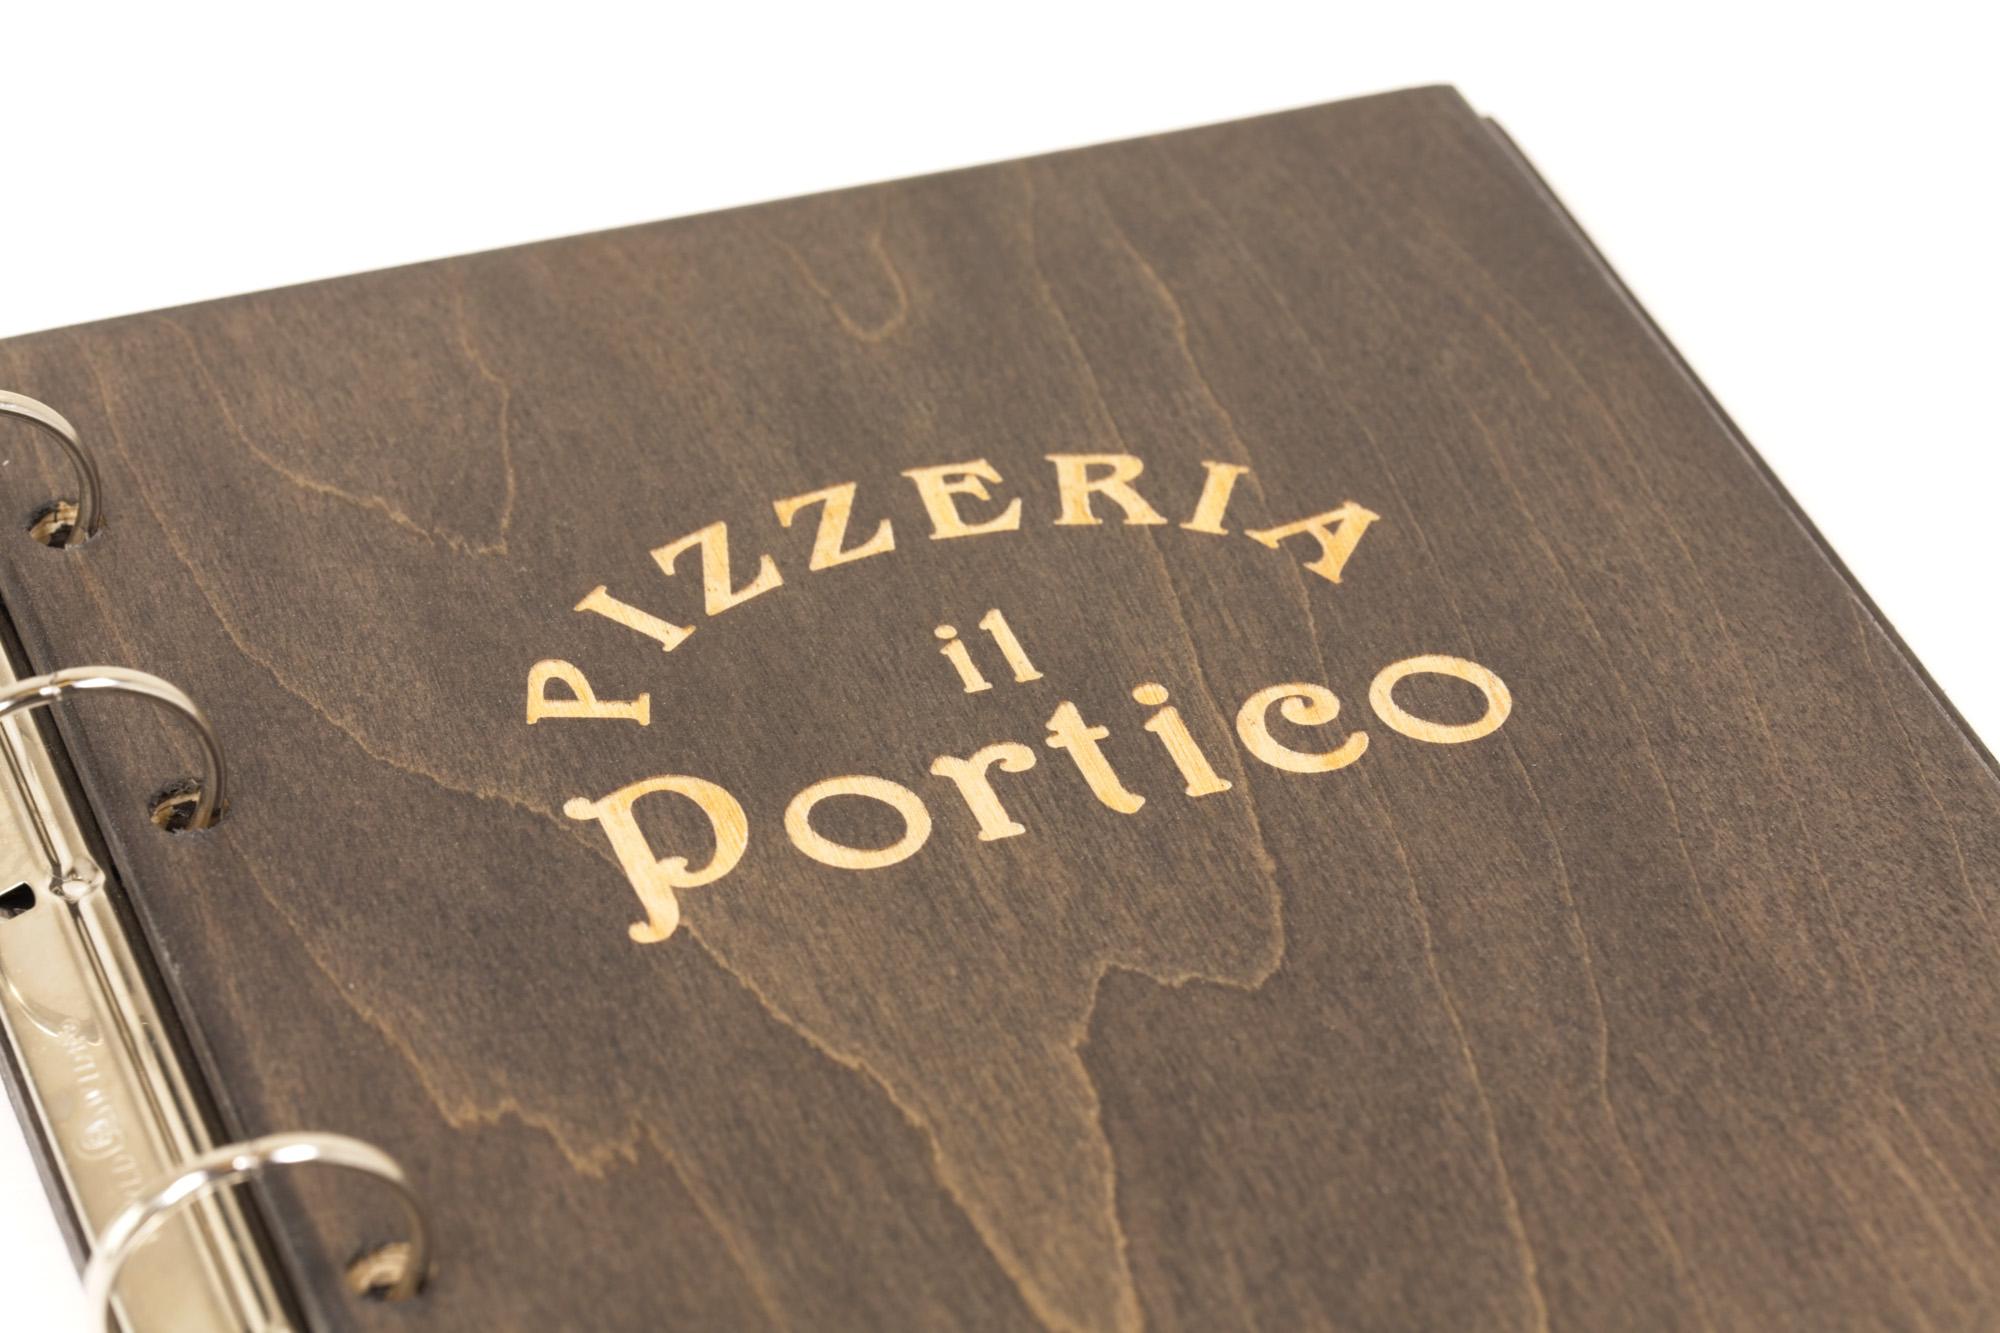 Portamenu Papireto - Pizzeria Il Portico